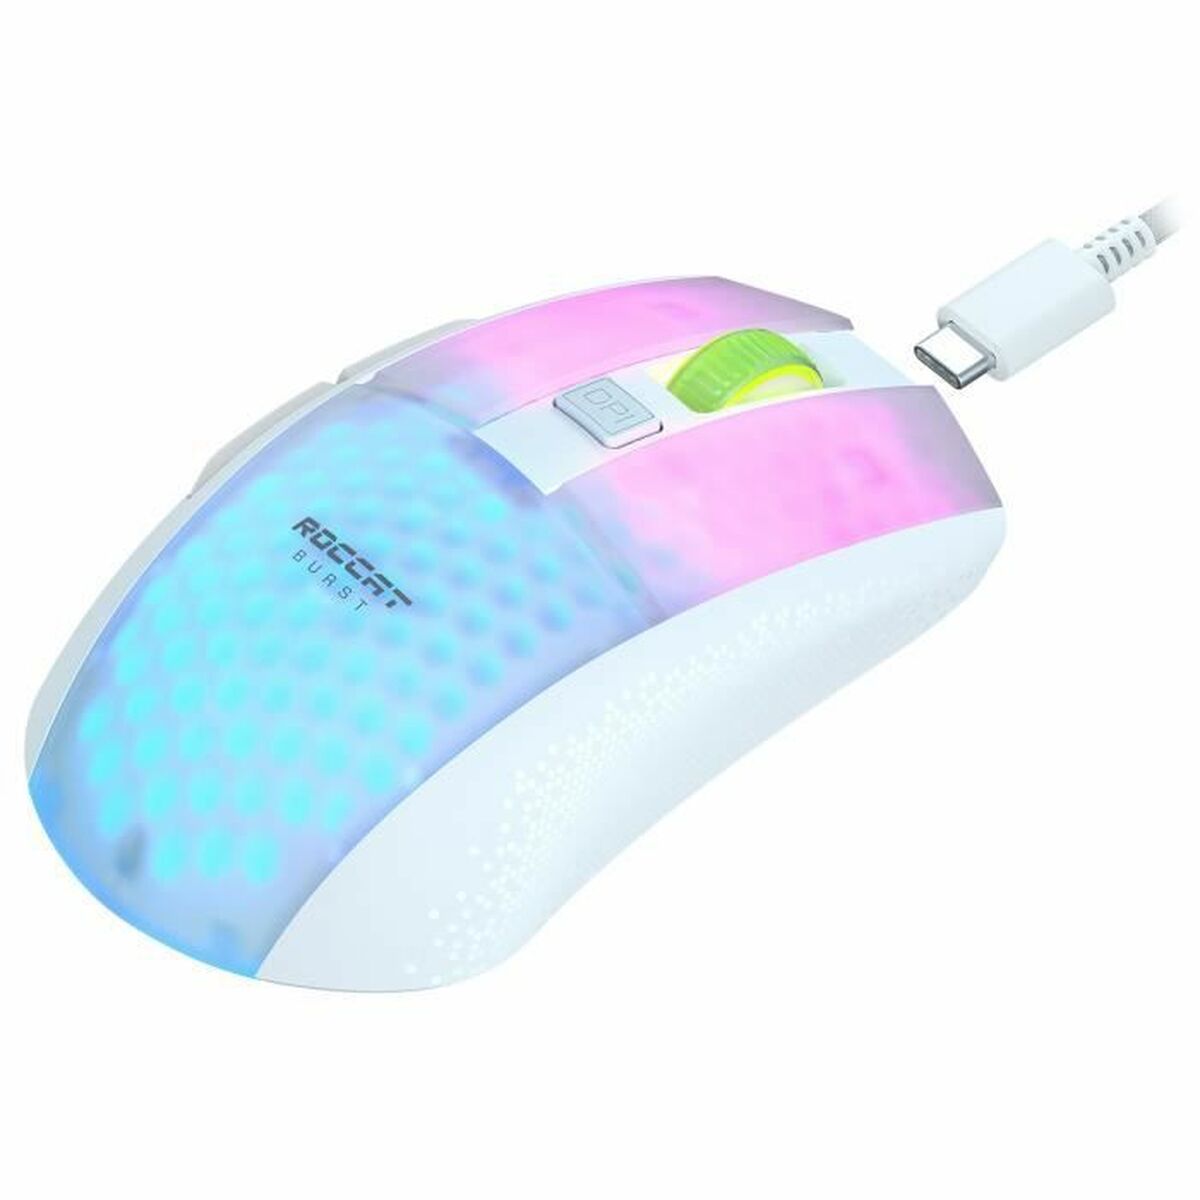 Myszka Roccat Burst Pro Air Bluetooth Biały Gaming Światła LED